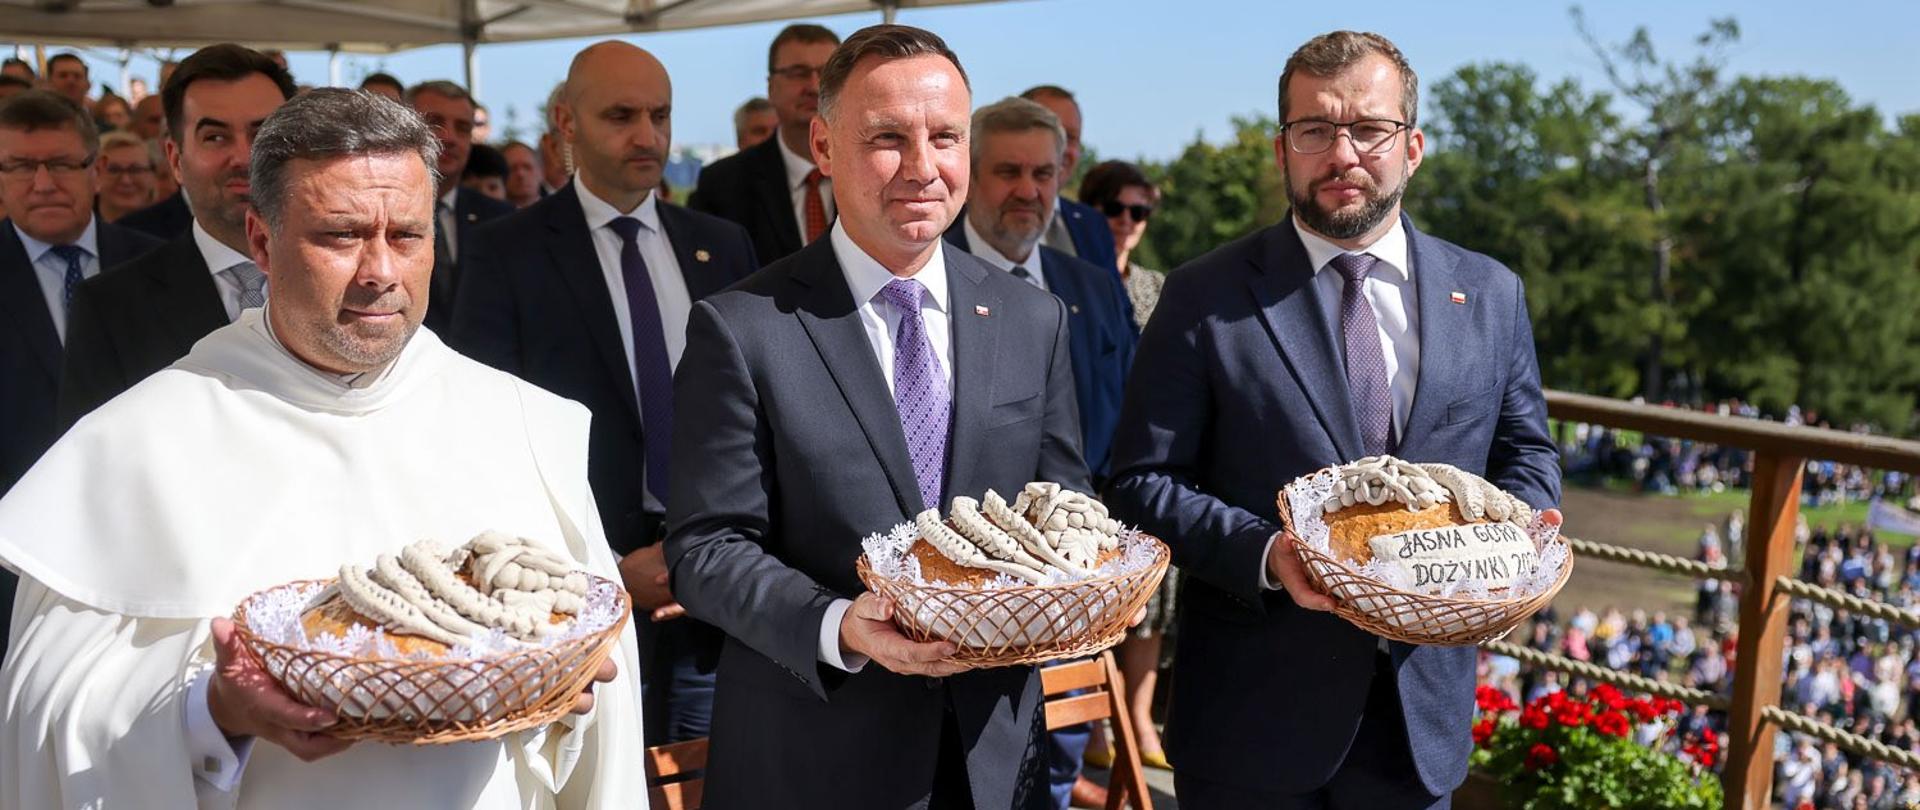 Prezydent Andrzej Duda i minister rolnictwa i rozwoju wsi Grzegorz Puda trzymający przed sobą w rękach koszyki z bochnami chleba